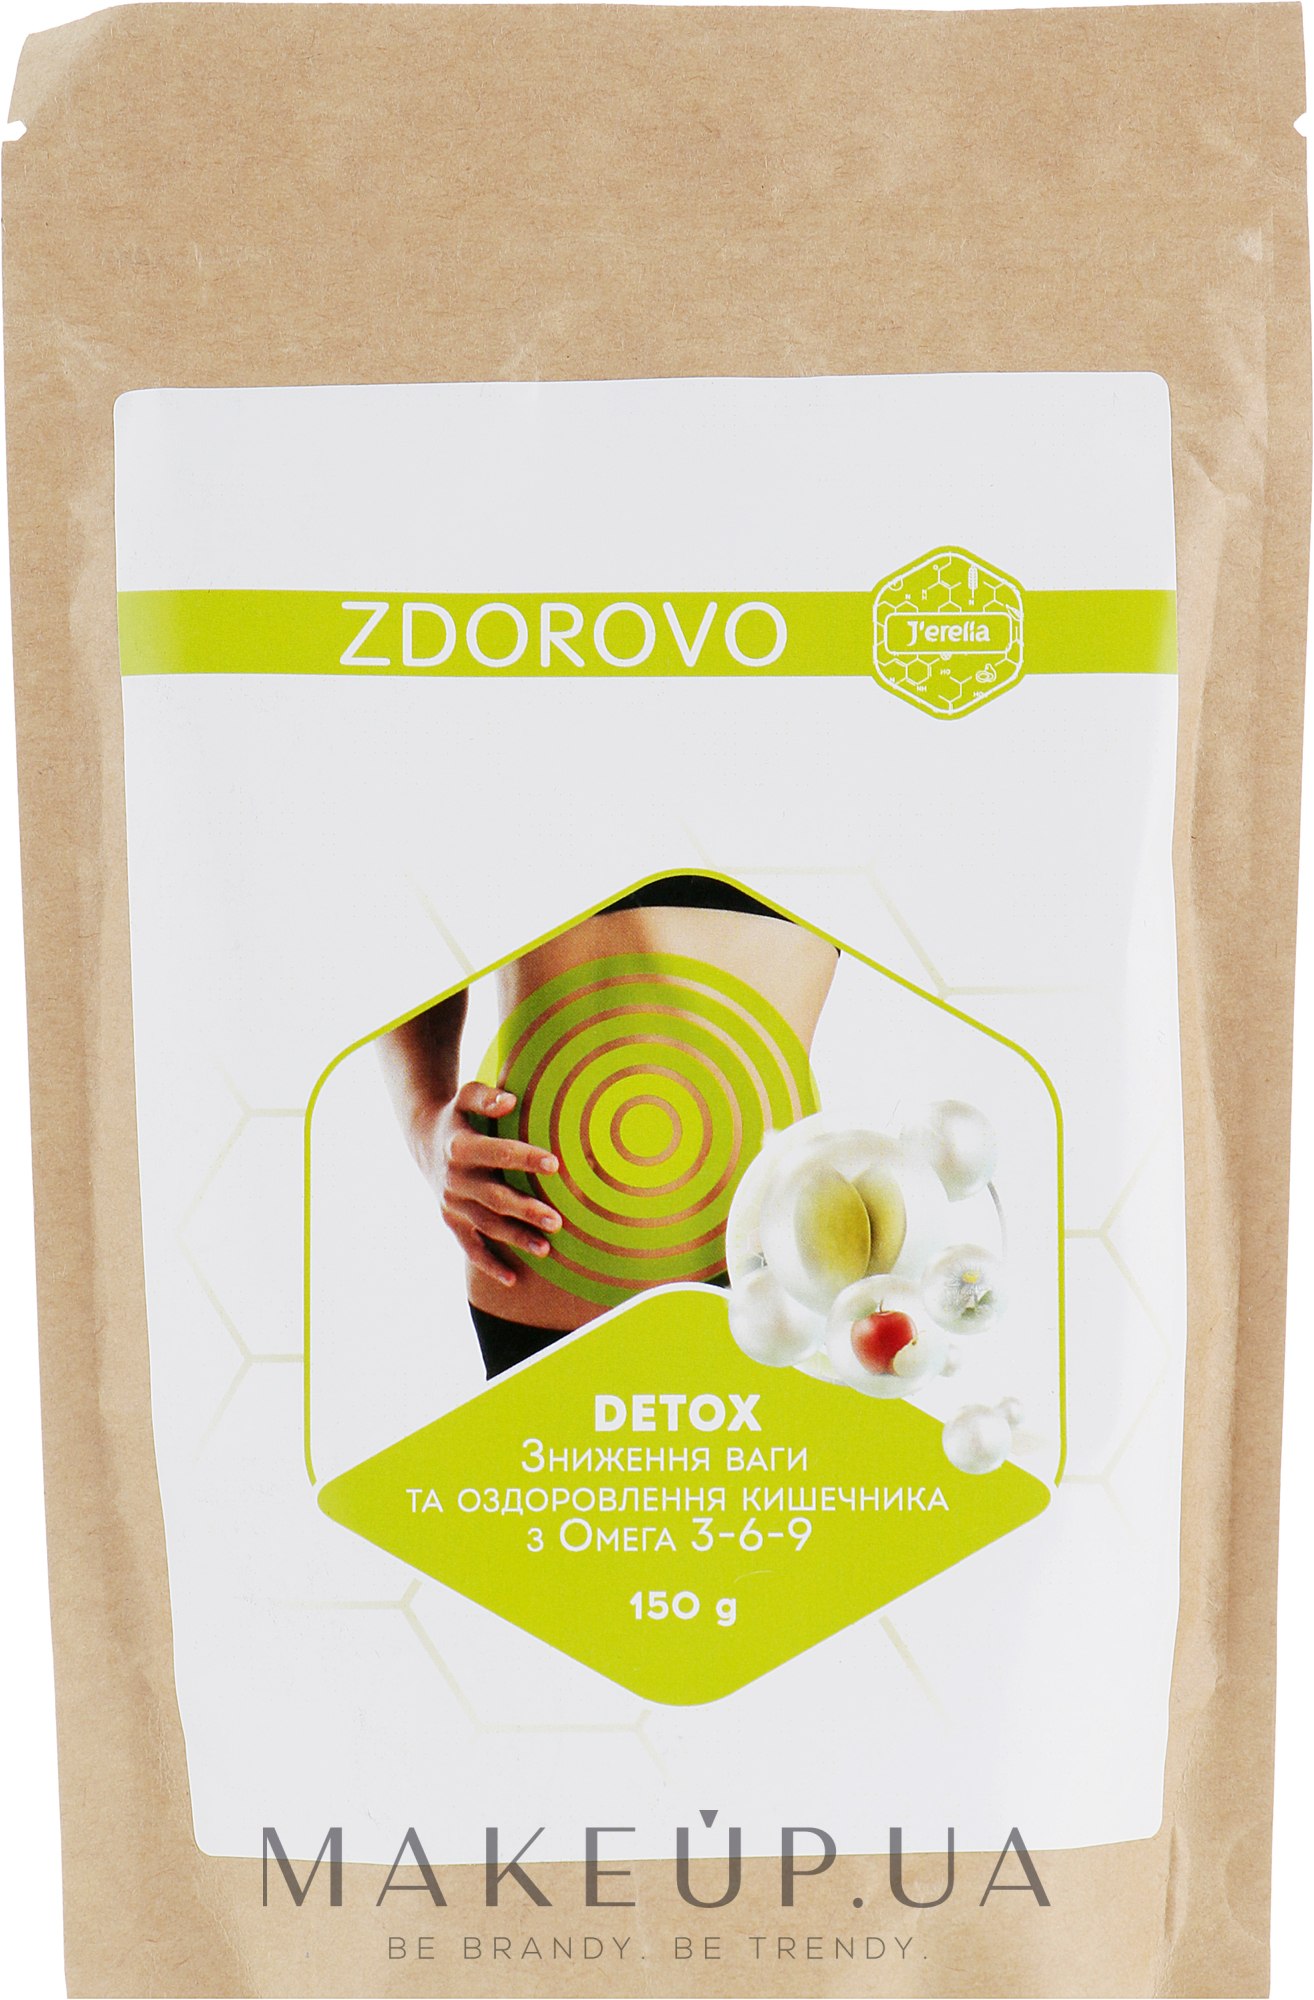 Диетический продукт для снижениея веса и оздоровления кишечника с Омега 3-6-9 - J'erelia Zdorovo	 — фото 150g